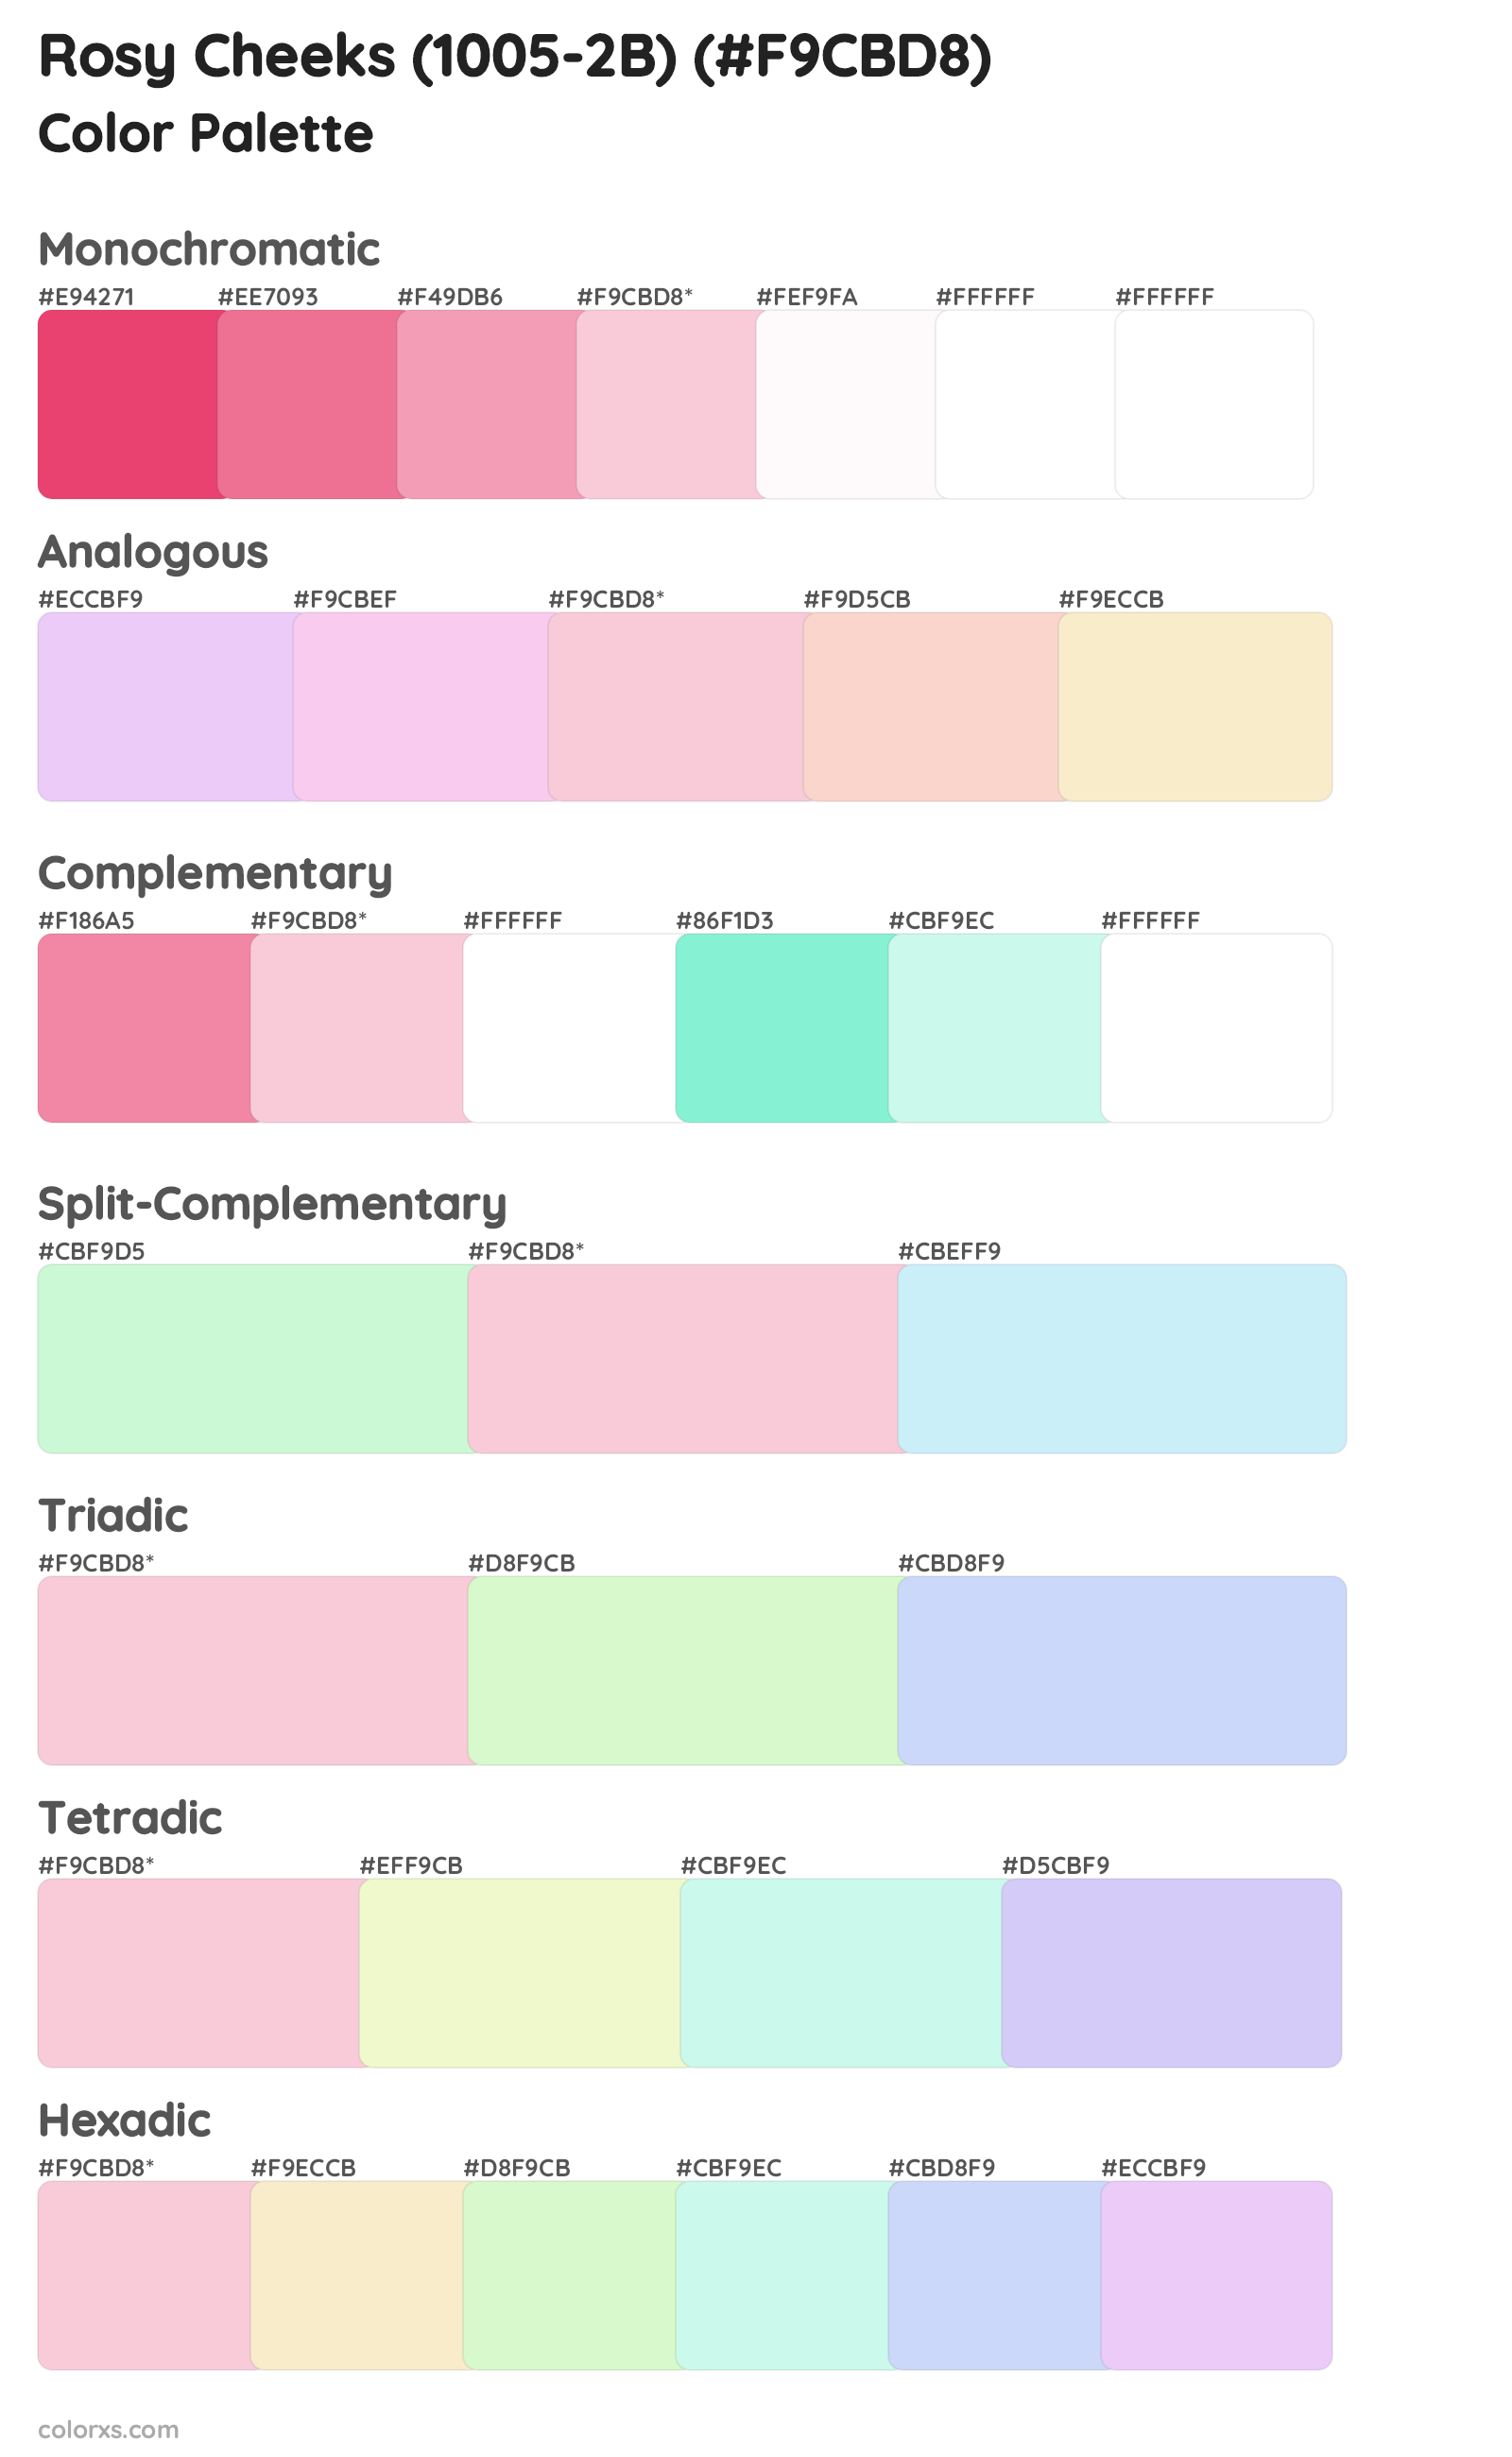 Rosy Cheeks (1005-2B) Color Scheme Palettes